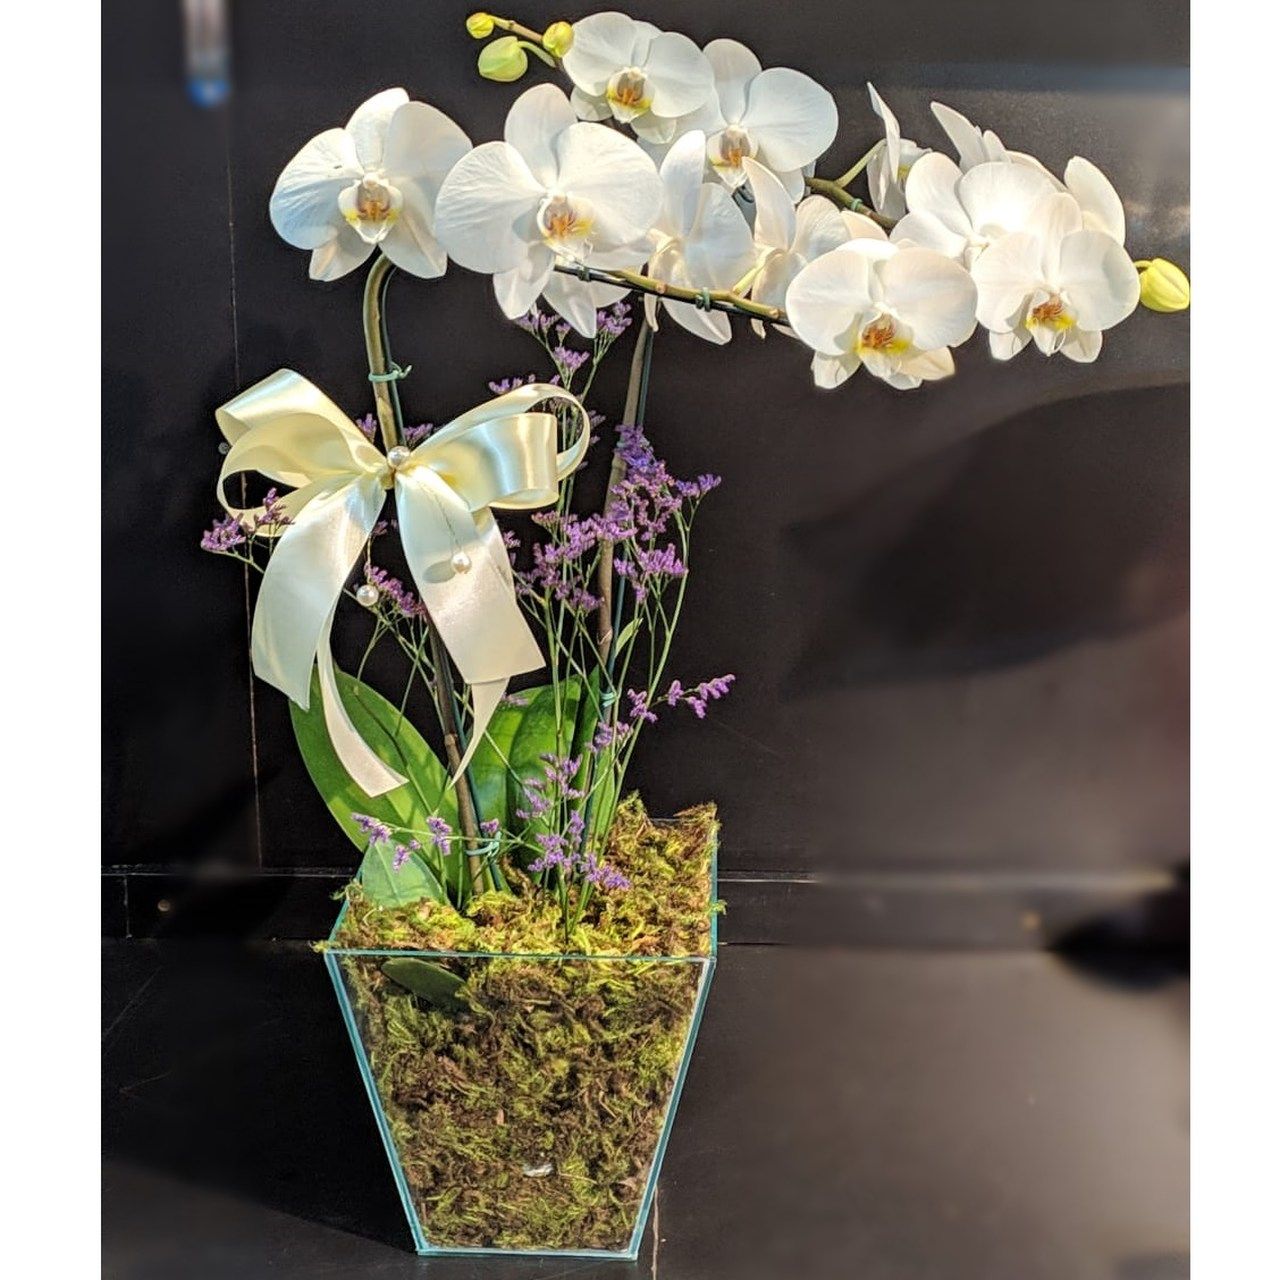 Entrega online de flores a domicilio - Orquídeas Como cuidar.